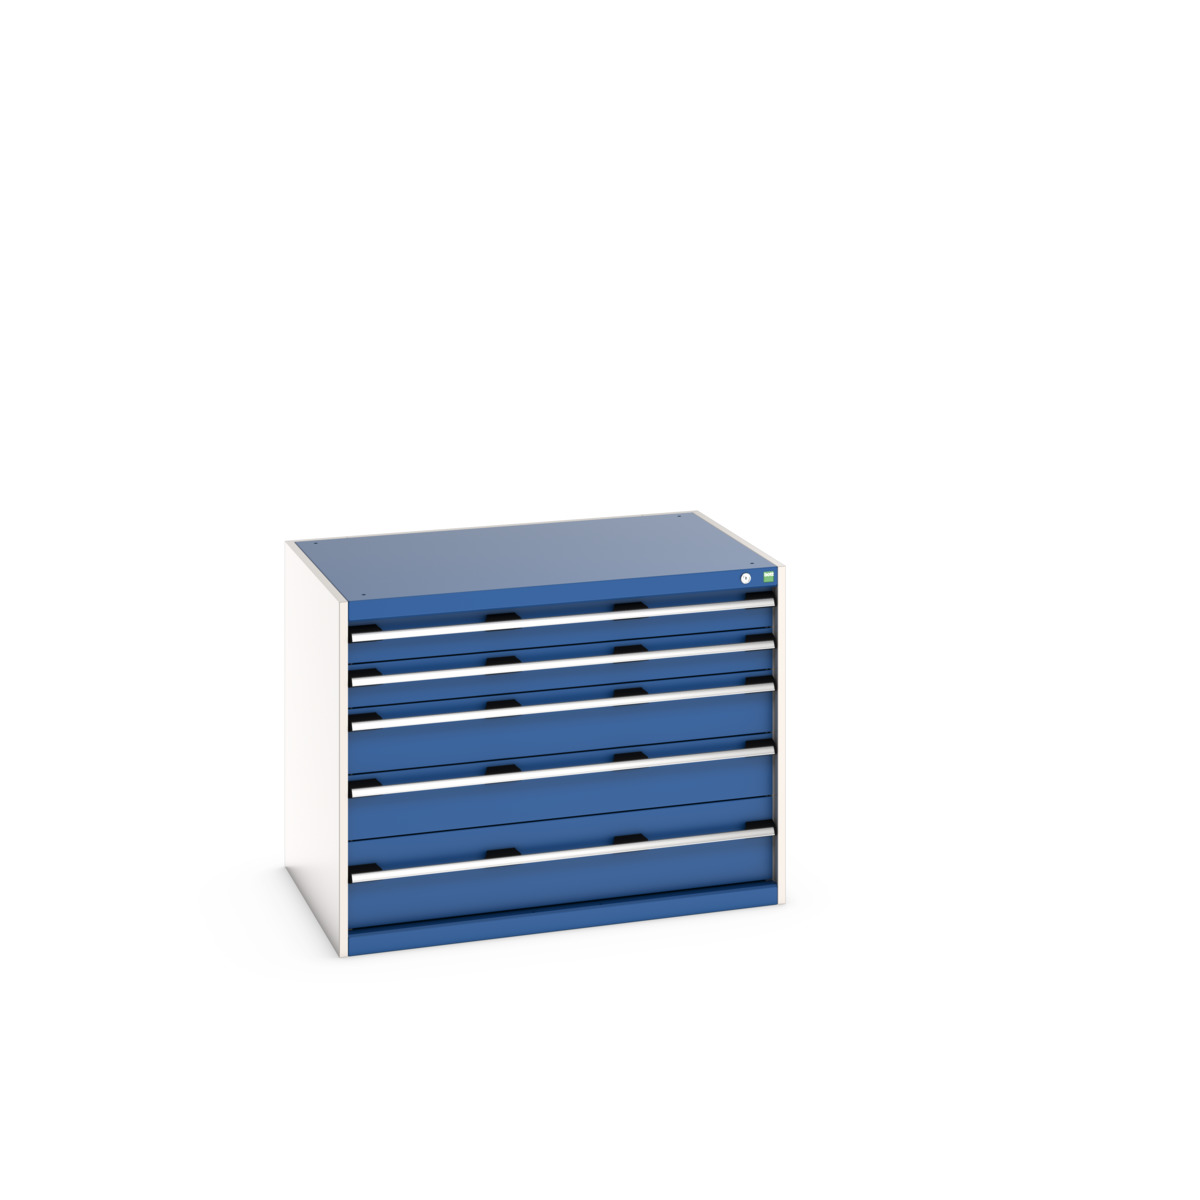 40029010.11V - cubio drawer cabinet